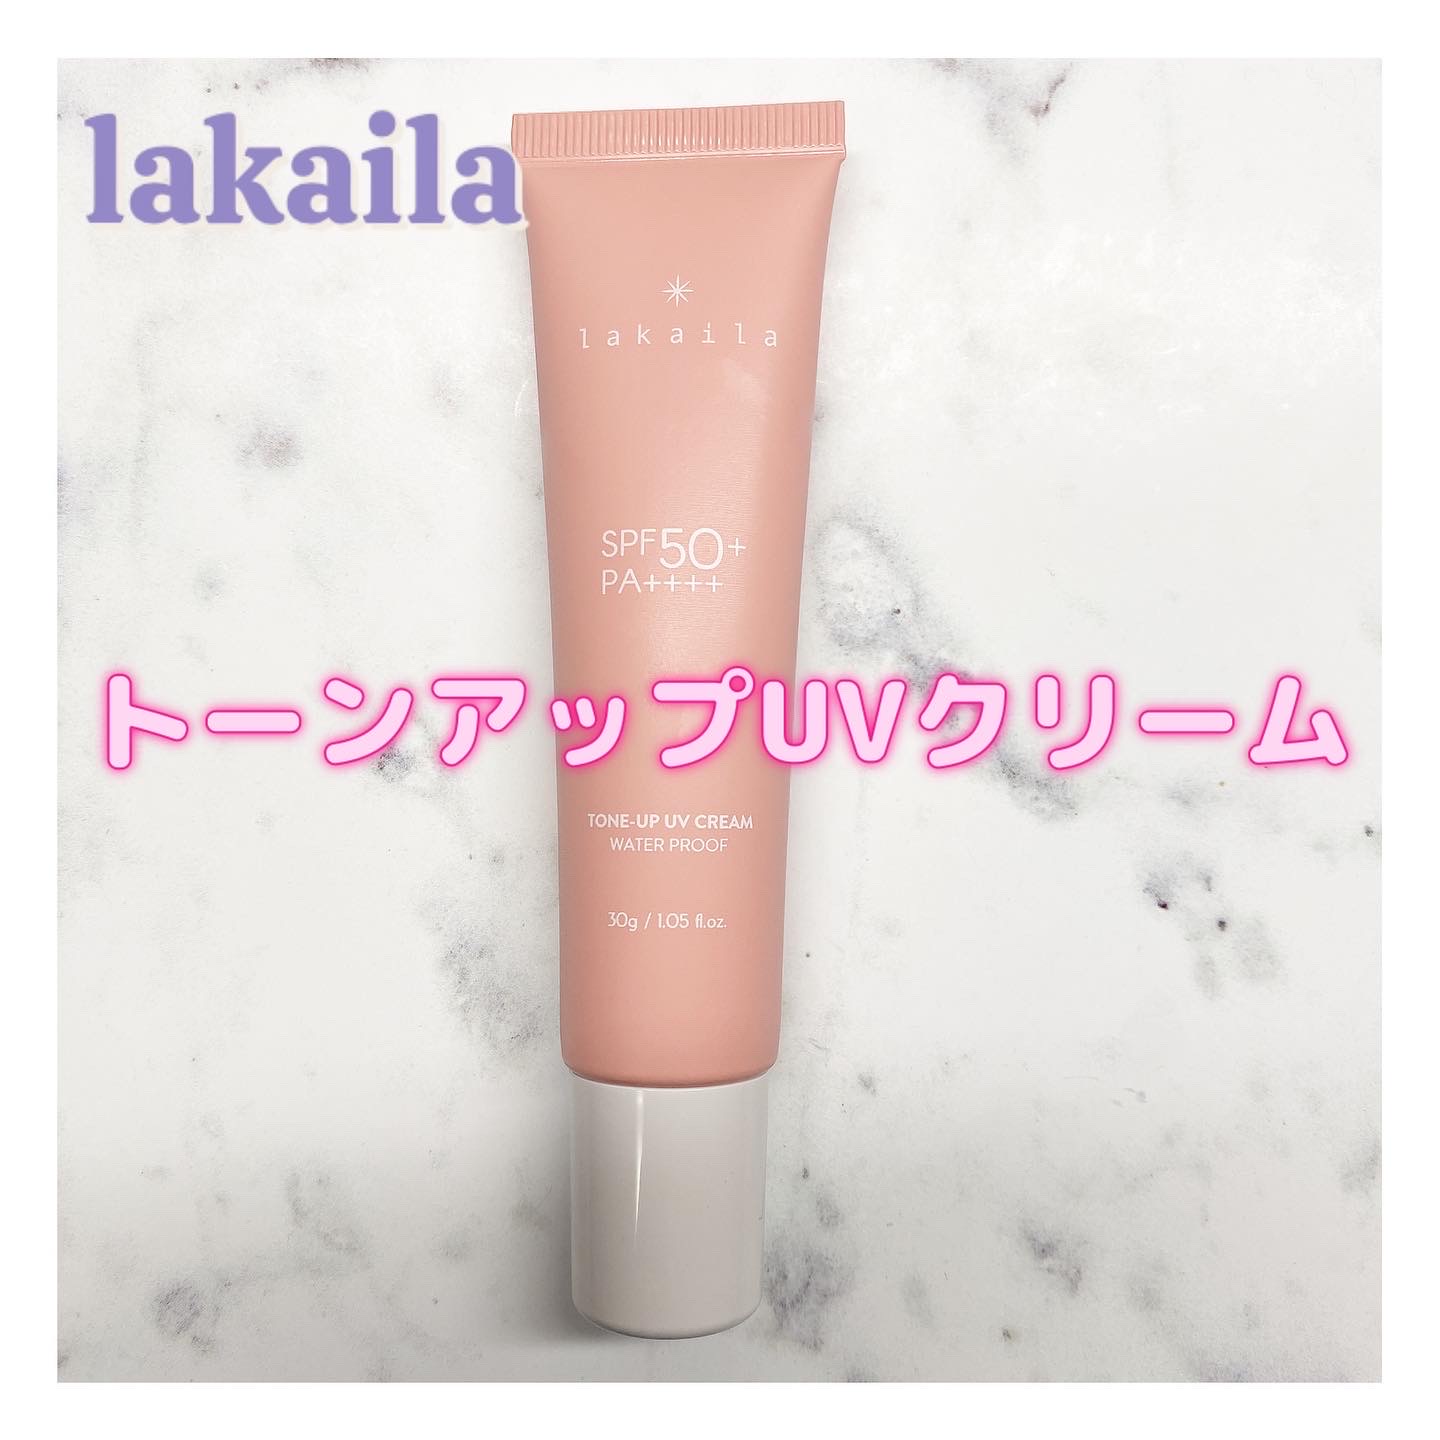 lakaila / lakailaの公式商品情報｜美容・化粧品情報はアットコスメ